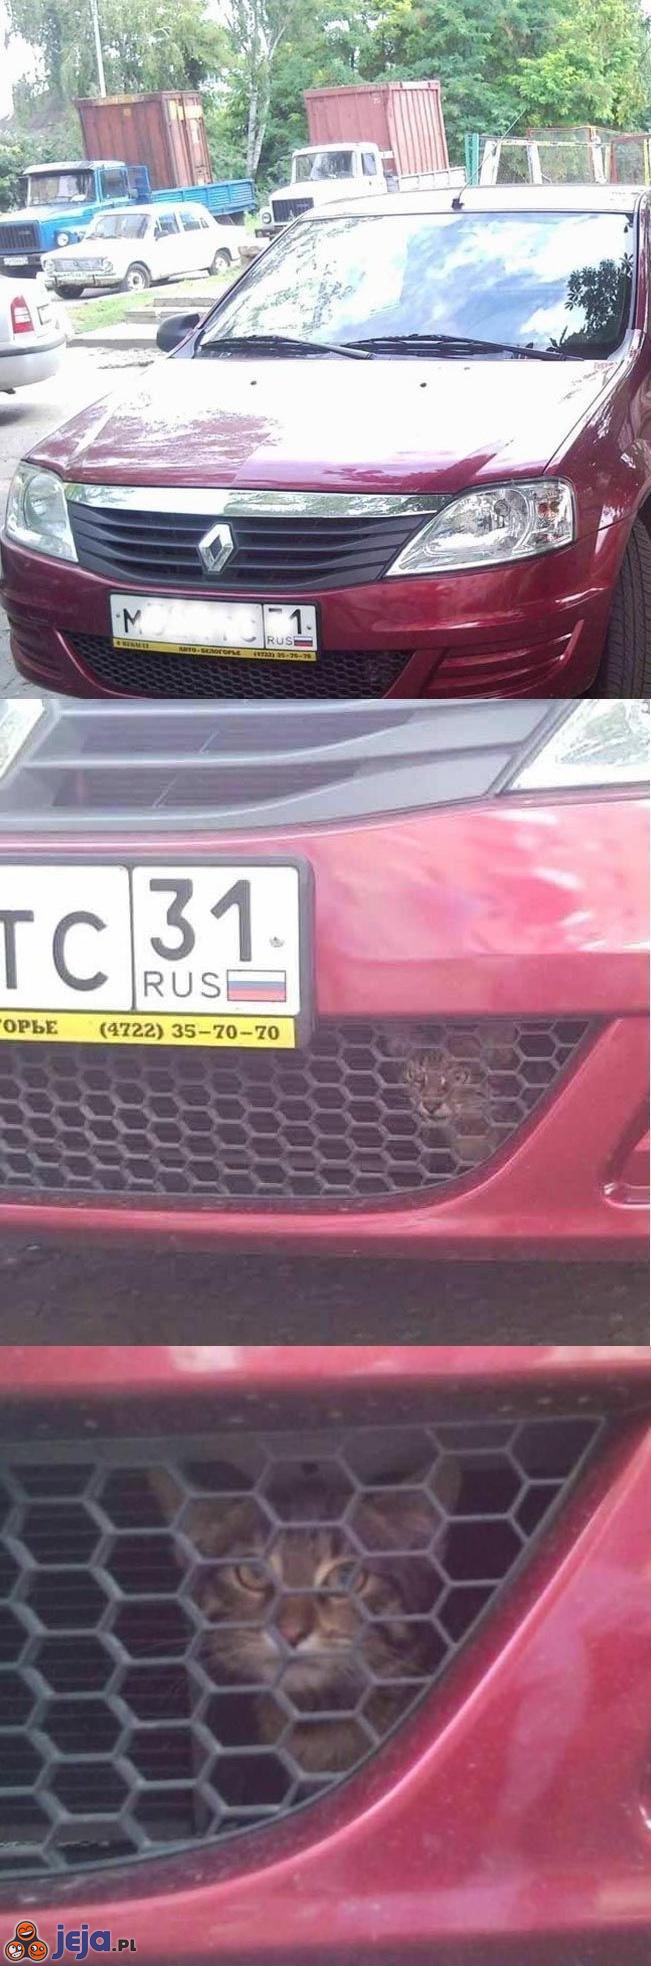 Rosyjski kot mechaniczny